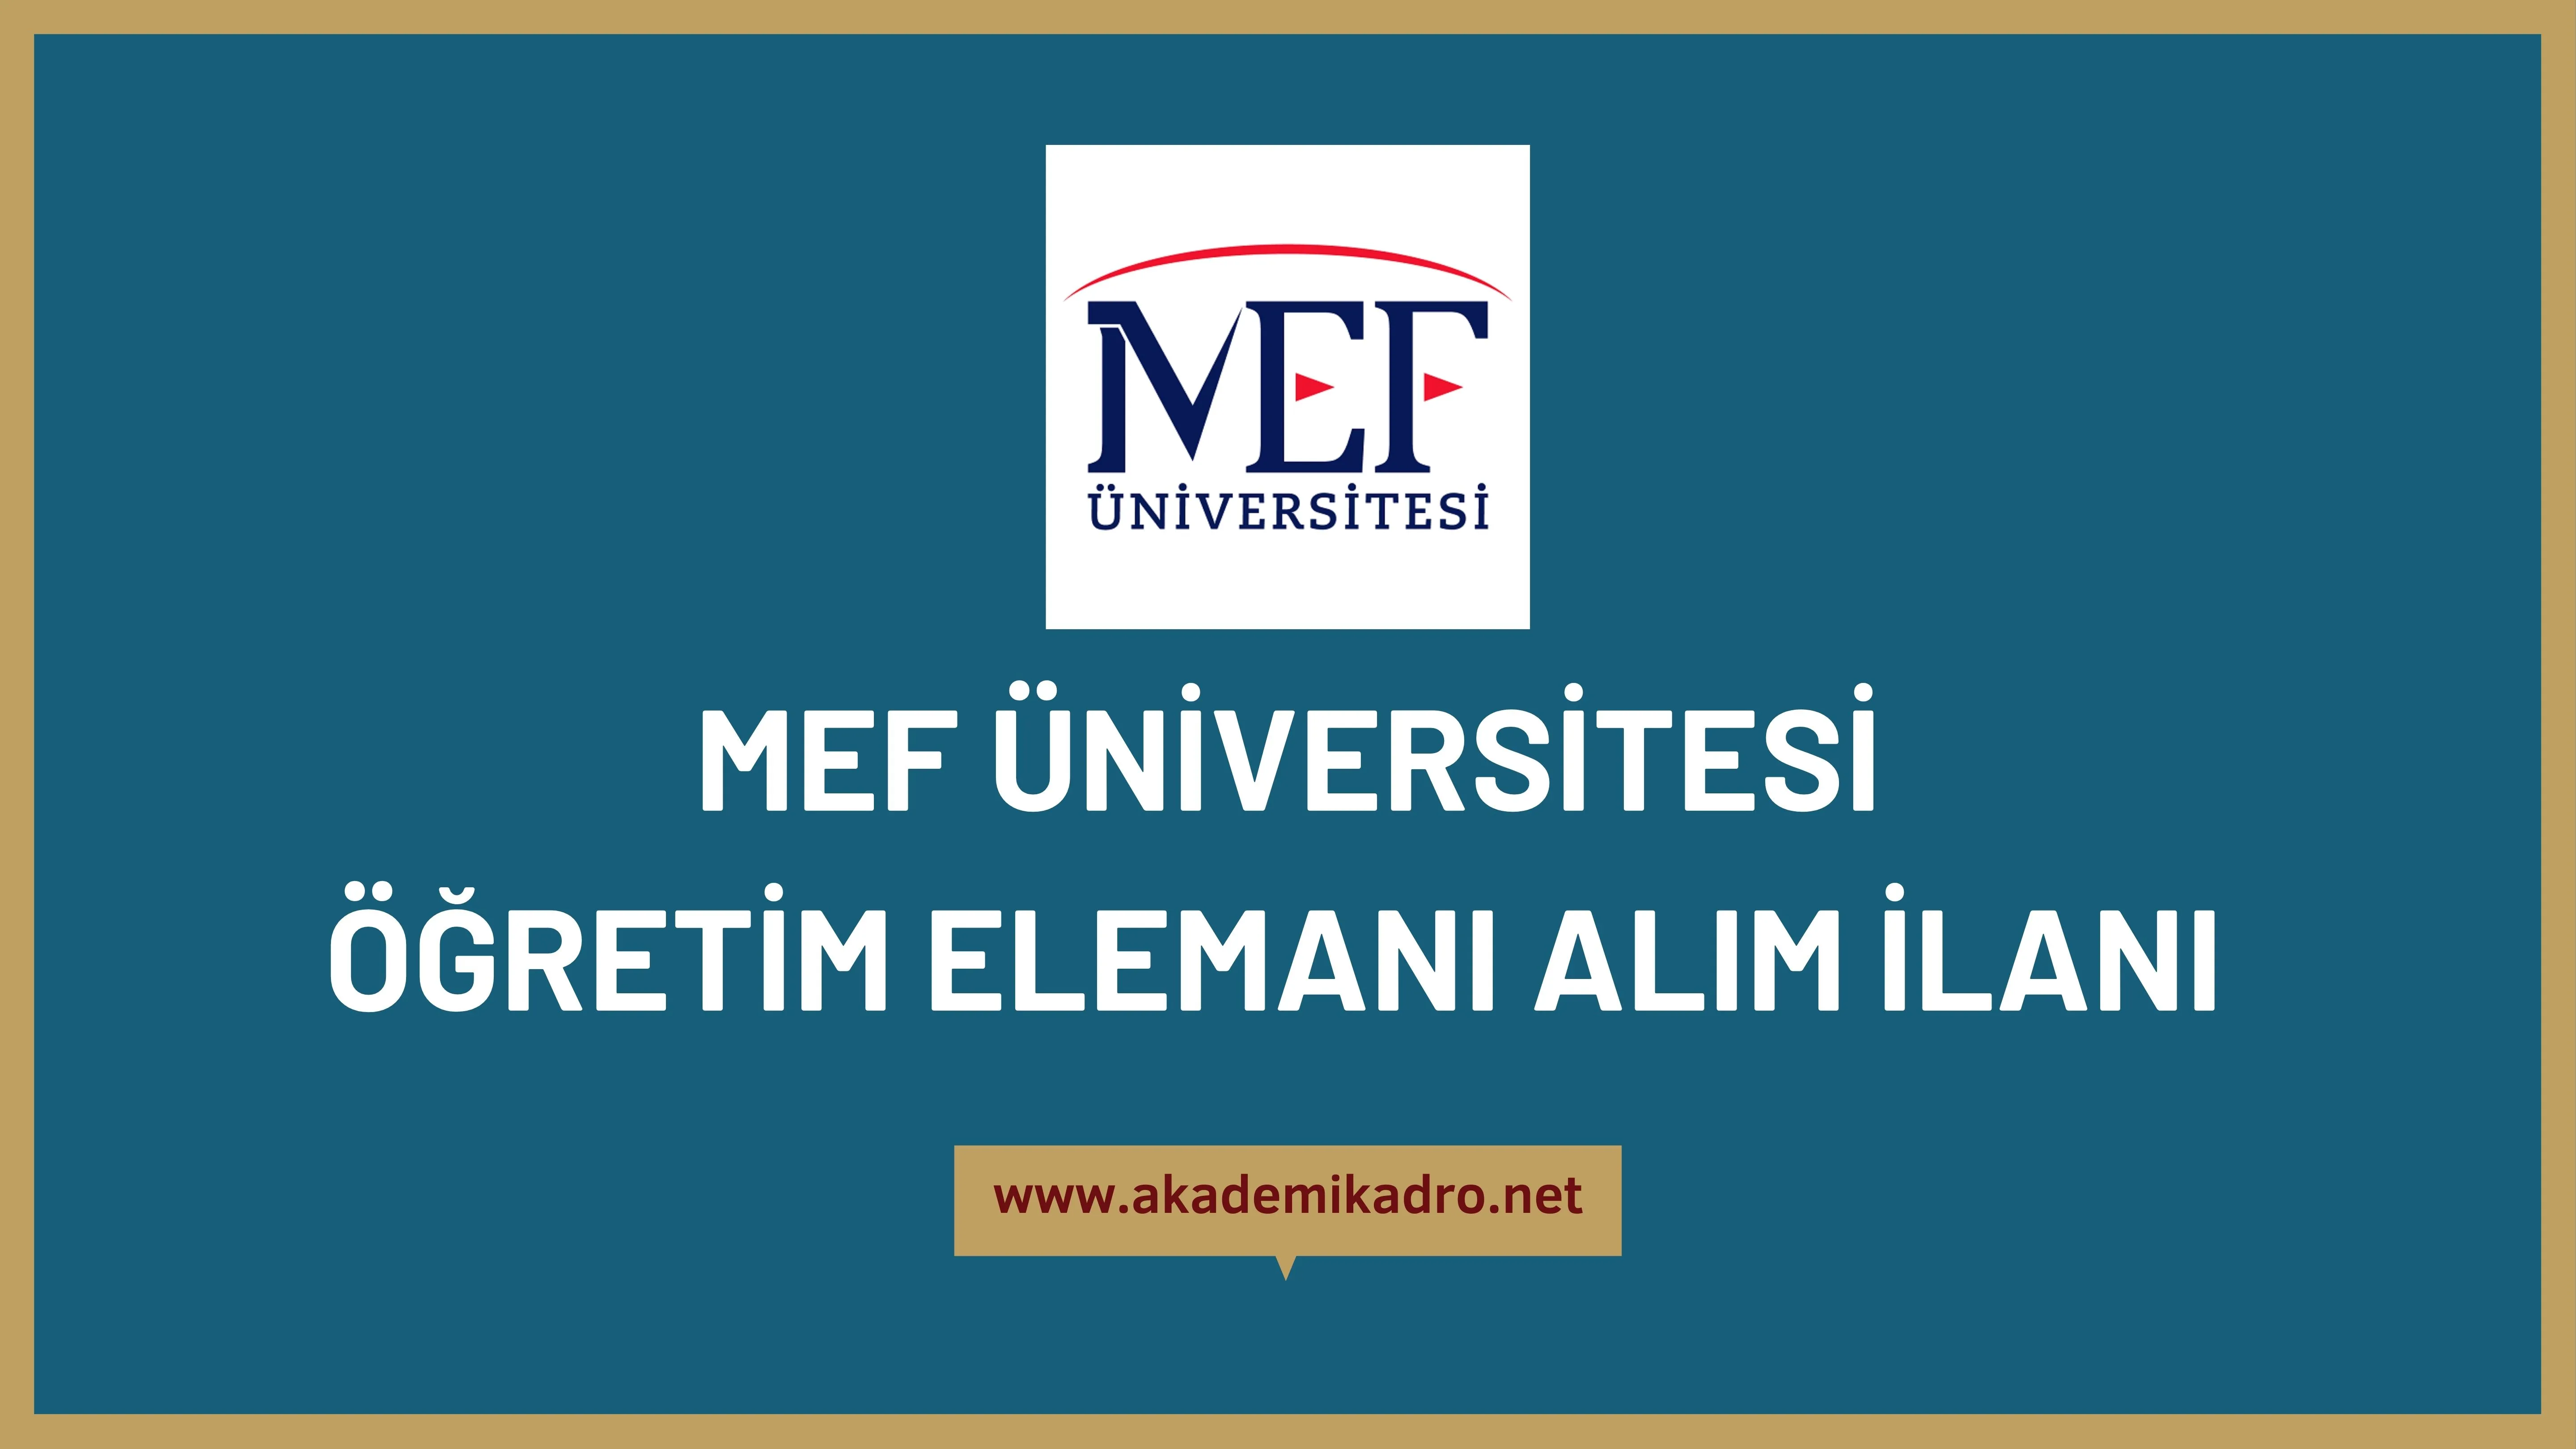 MEF Üniversitesi 7 öğretim üyesi ve 3 Araştırma görevlisi alacaktır.